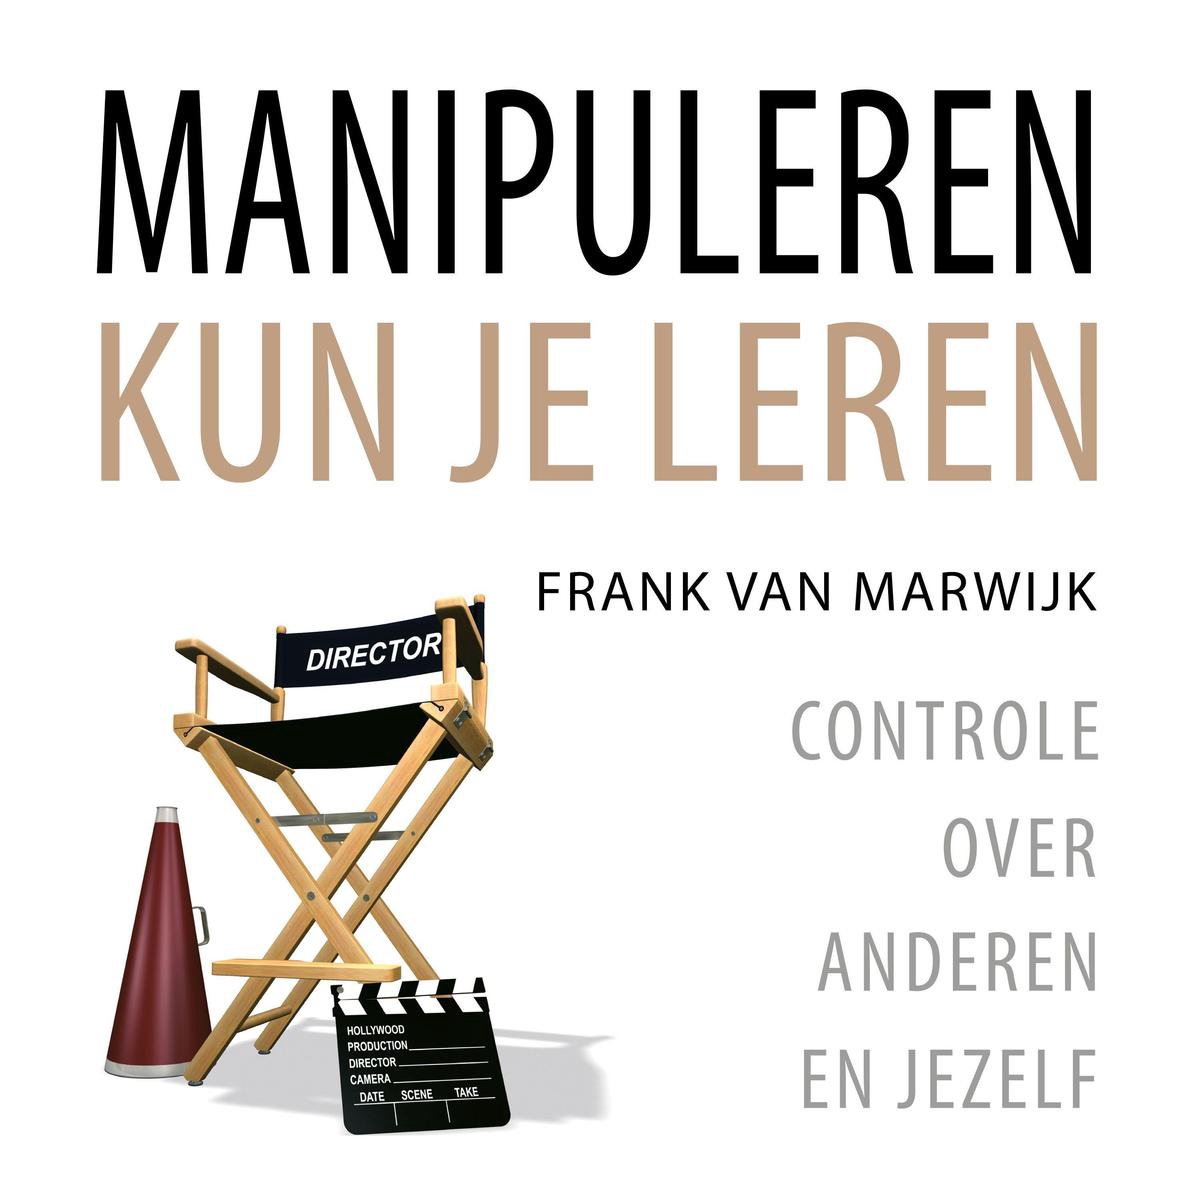 Manipuleren kun je leren - Frank van Marwijk